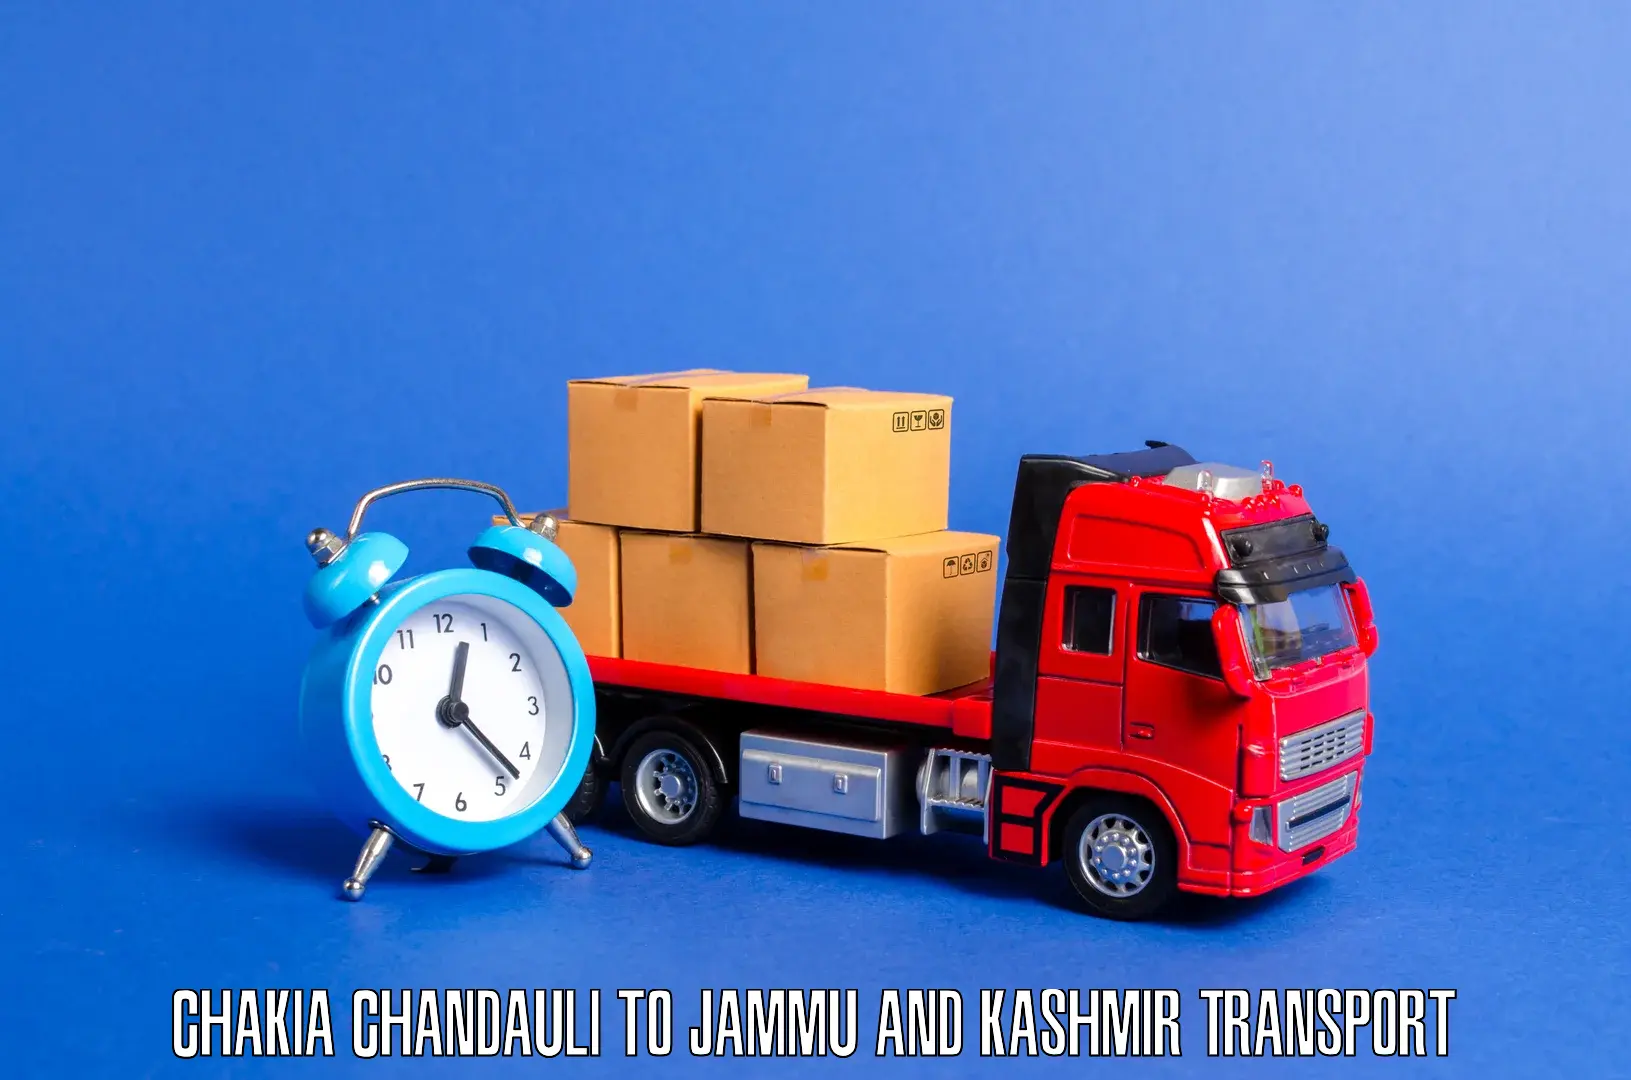 Lorry transport service Chakia Chandauli to Jammu